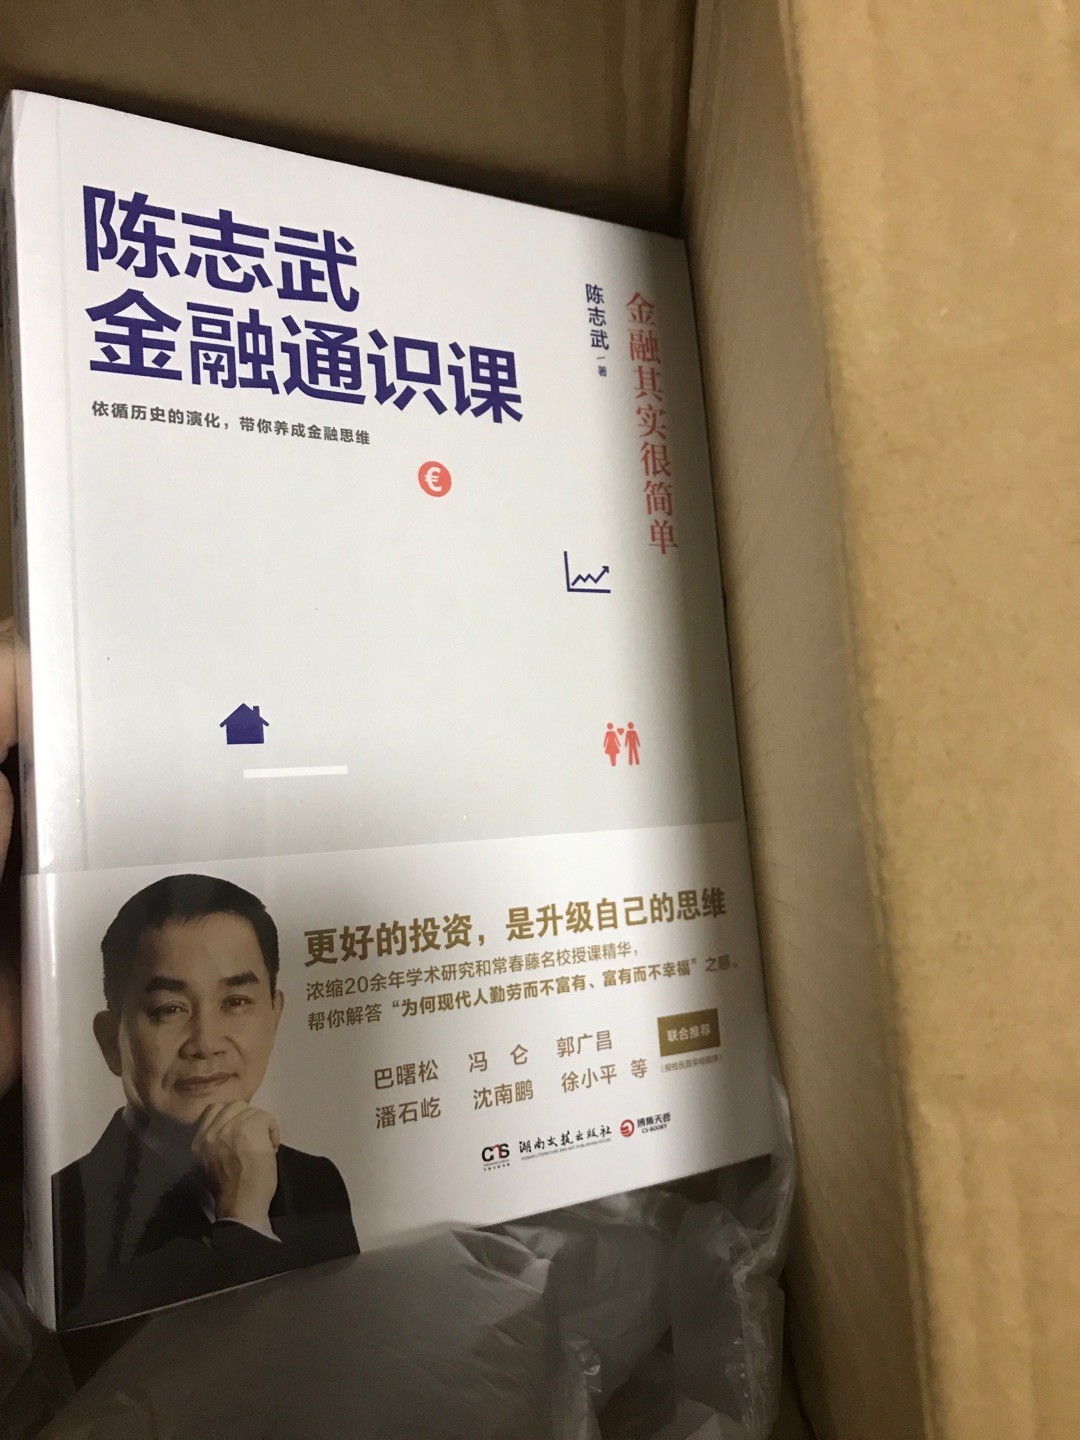 陈志武教授的金融书籍被推荐得比较多了，一起买来学习一下。书本材质还行吧。